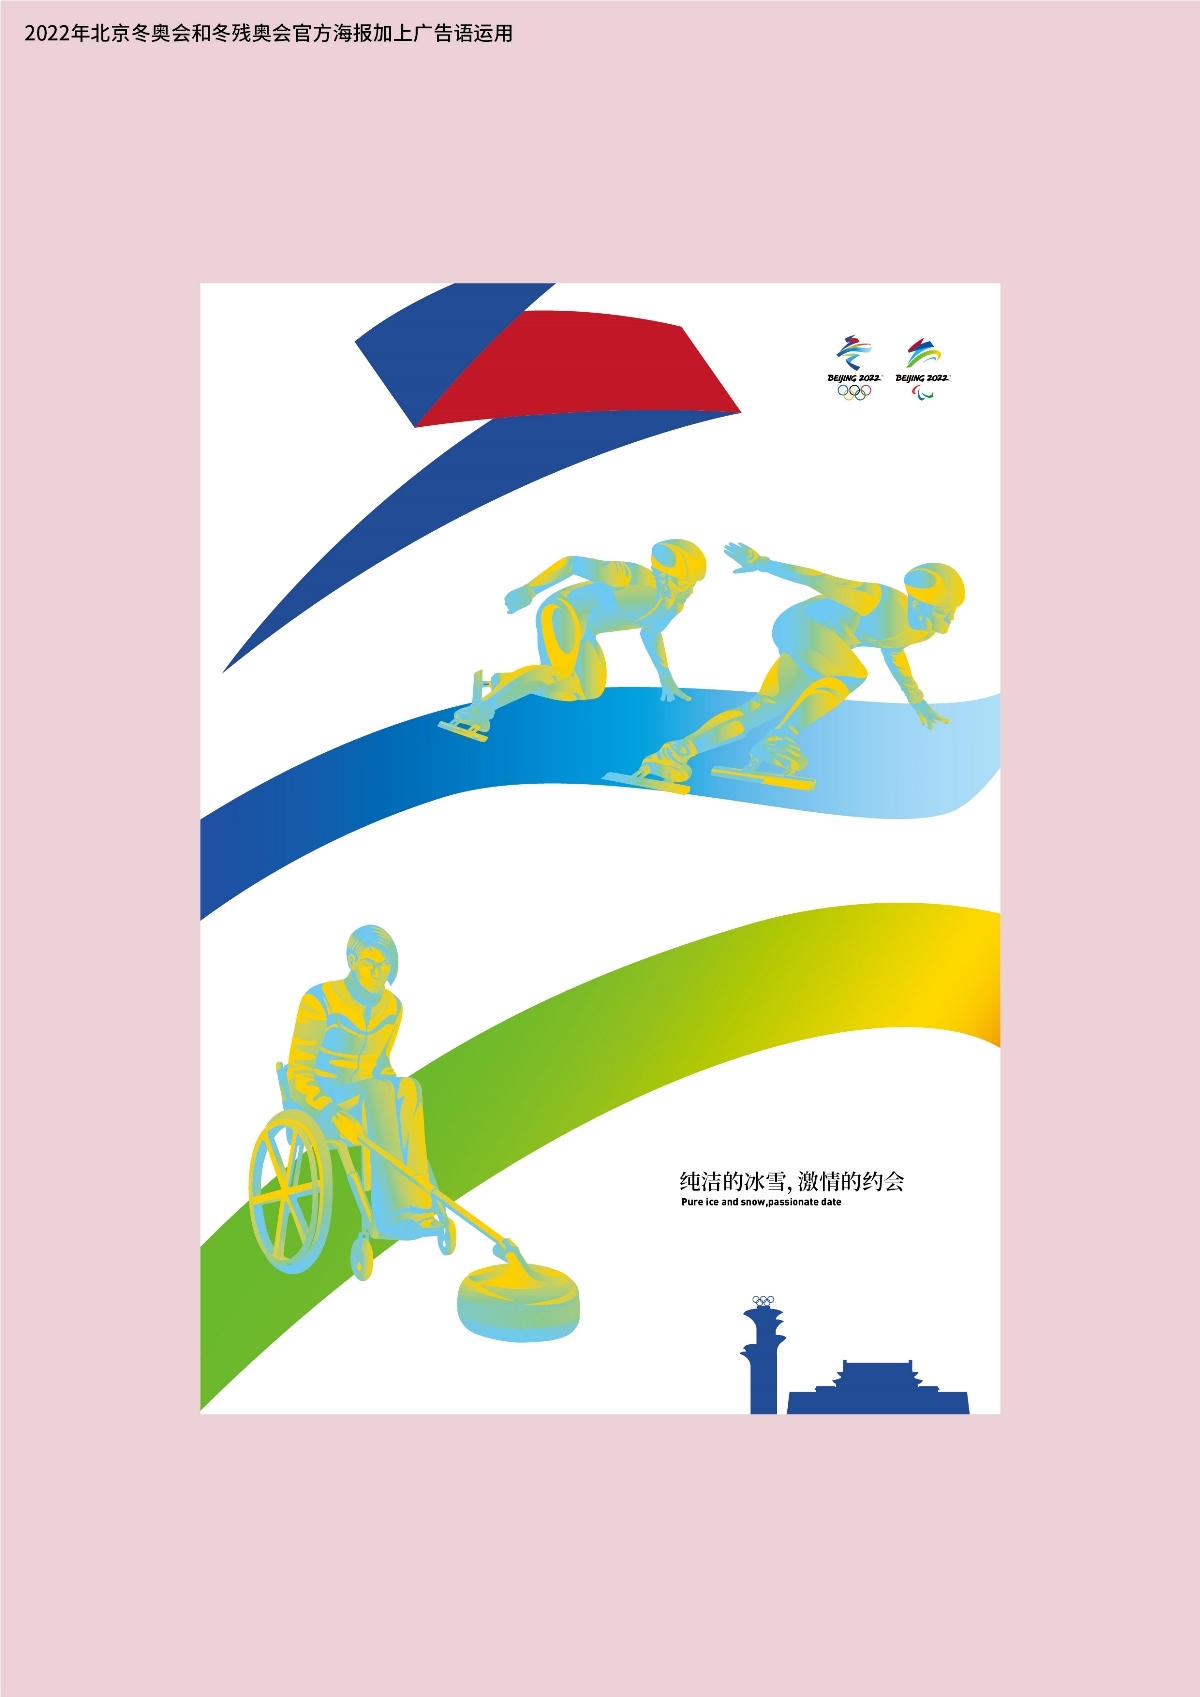 2022年北京冬奥会和冬残奥会官方海报